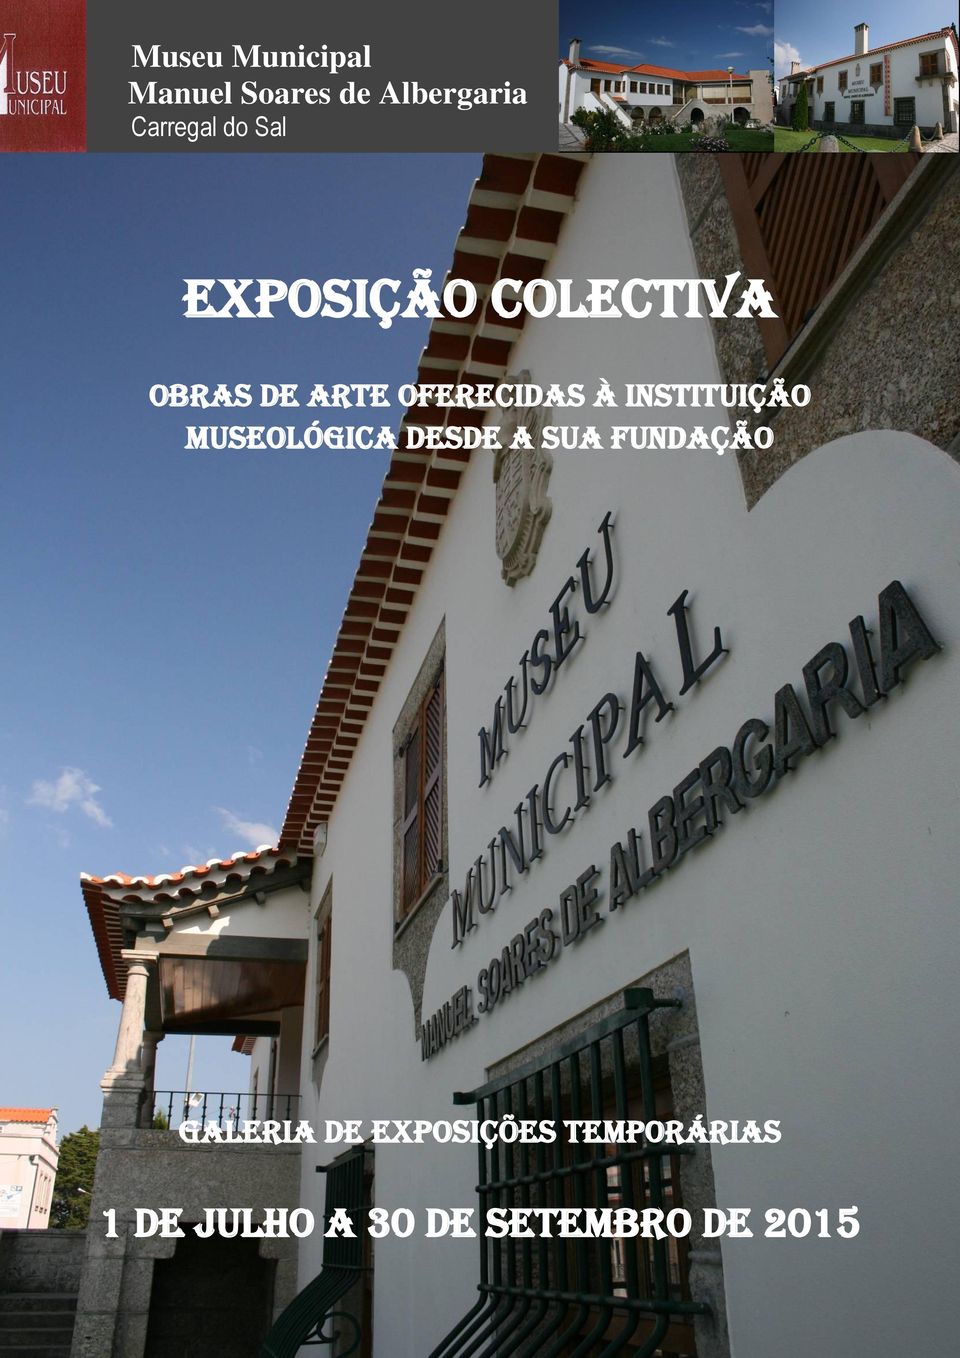 Instituição Museológica desde a sua fundação GALERIA DE